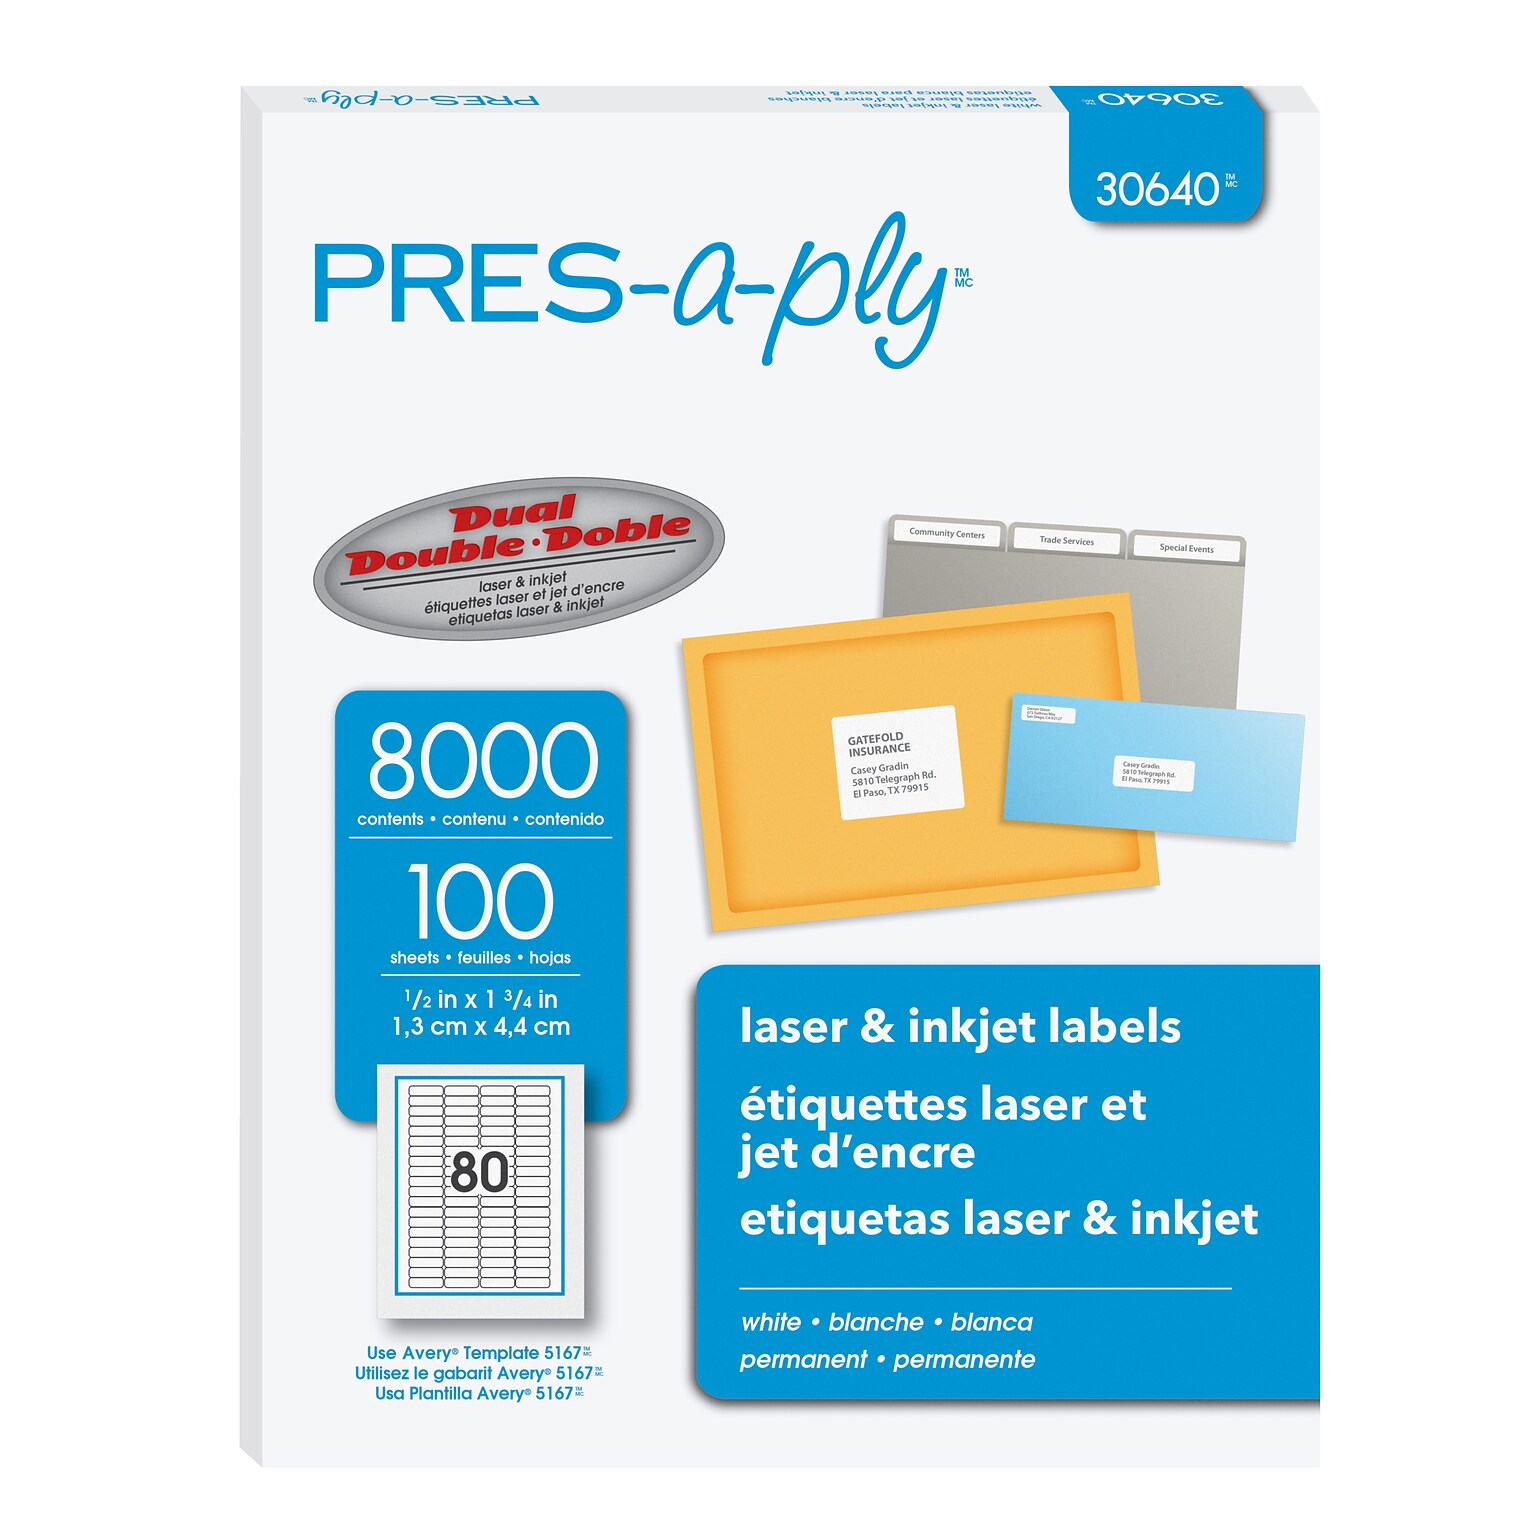 PRES-a-ply Laser/Inkjet Return Address Labels, 1/2 x 1-3/4, White, 80 Labels/Sheet, 100 Sheets/Pack (30640)